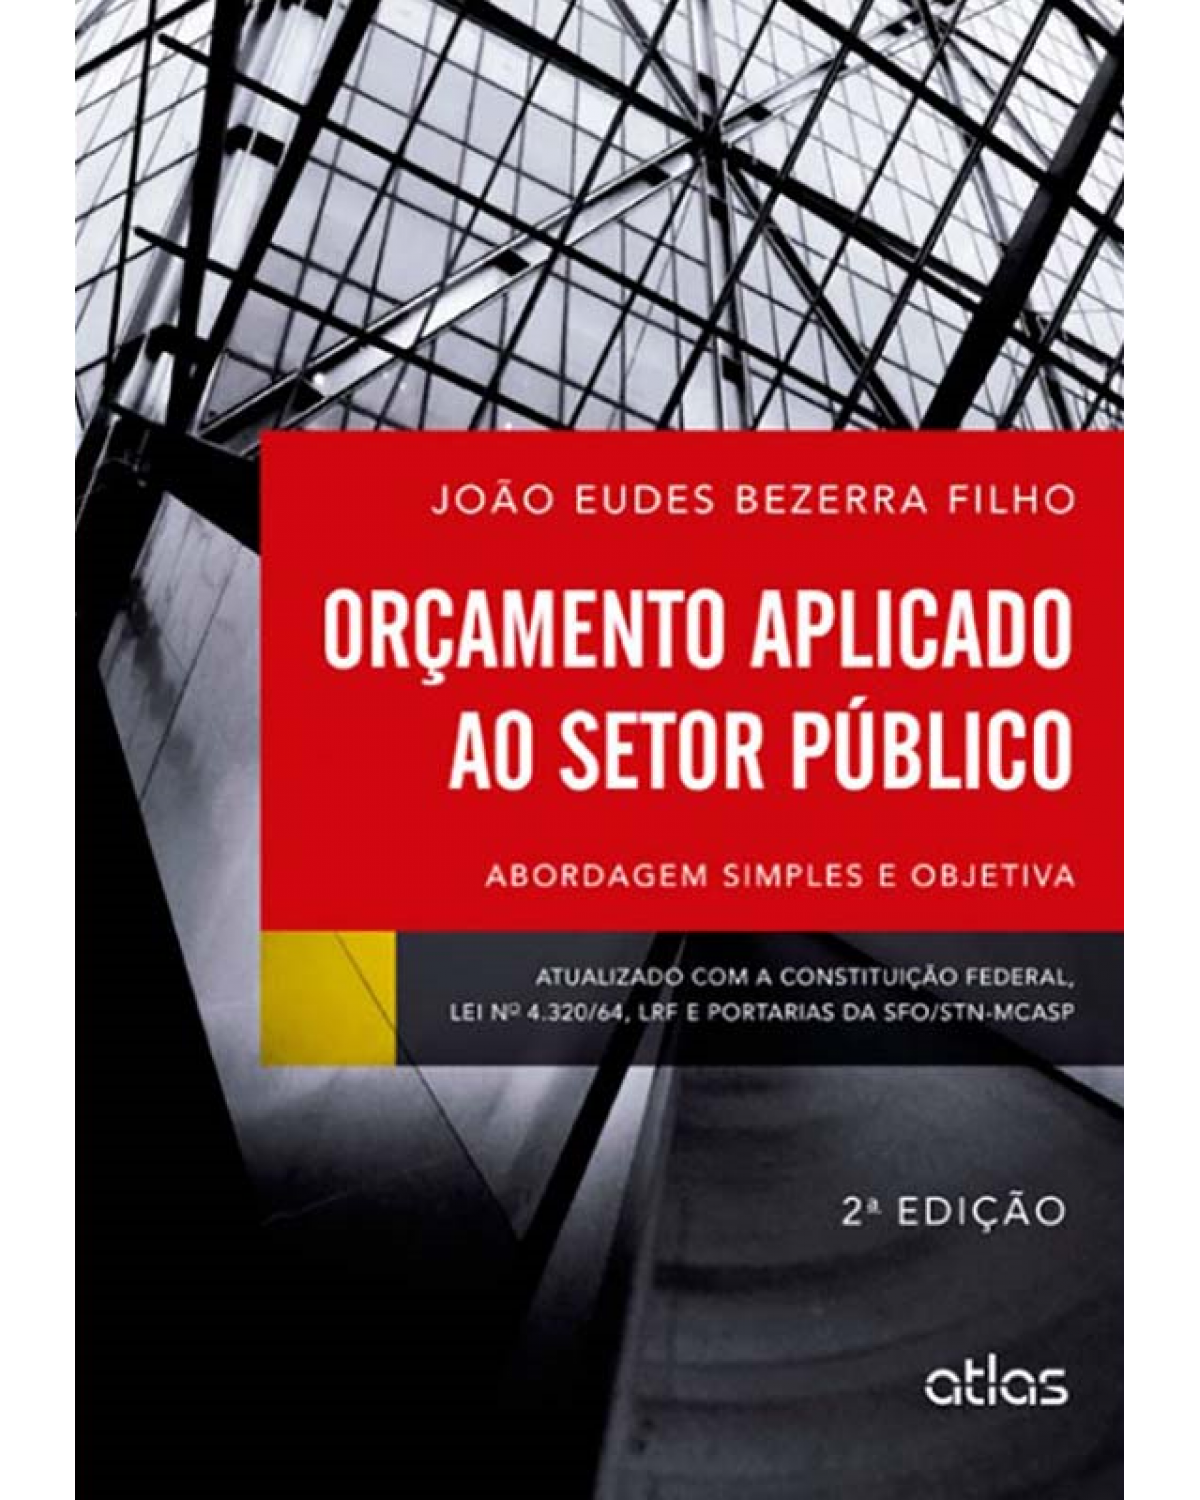 Orçamento aplicado ao setor público - Abordagem simples e objetiva - 2ª Edição | 2013